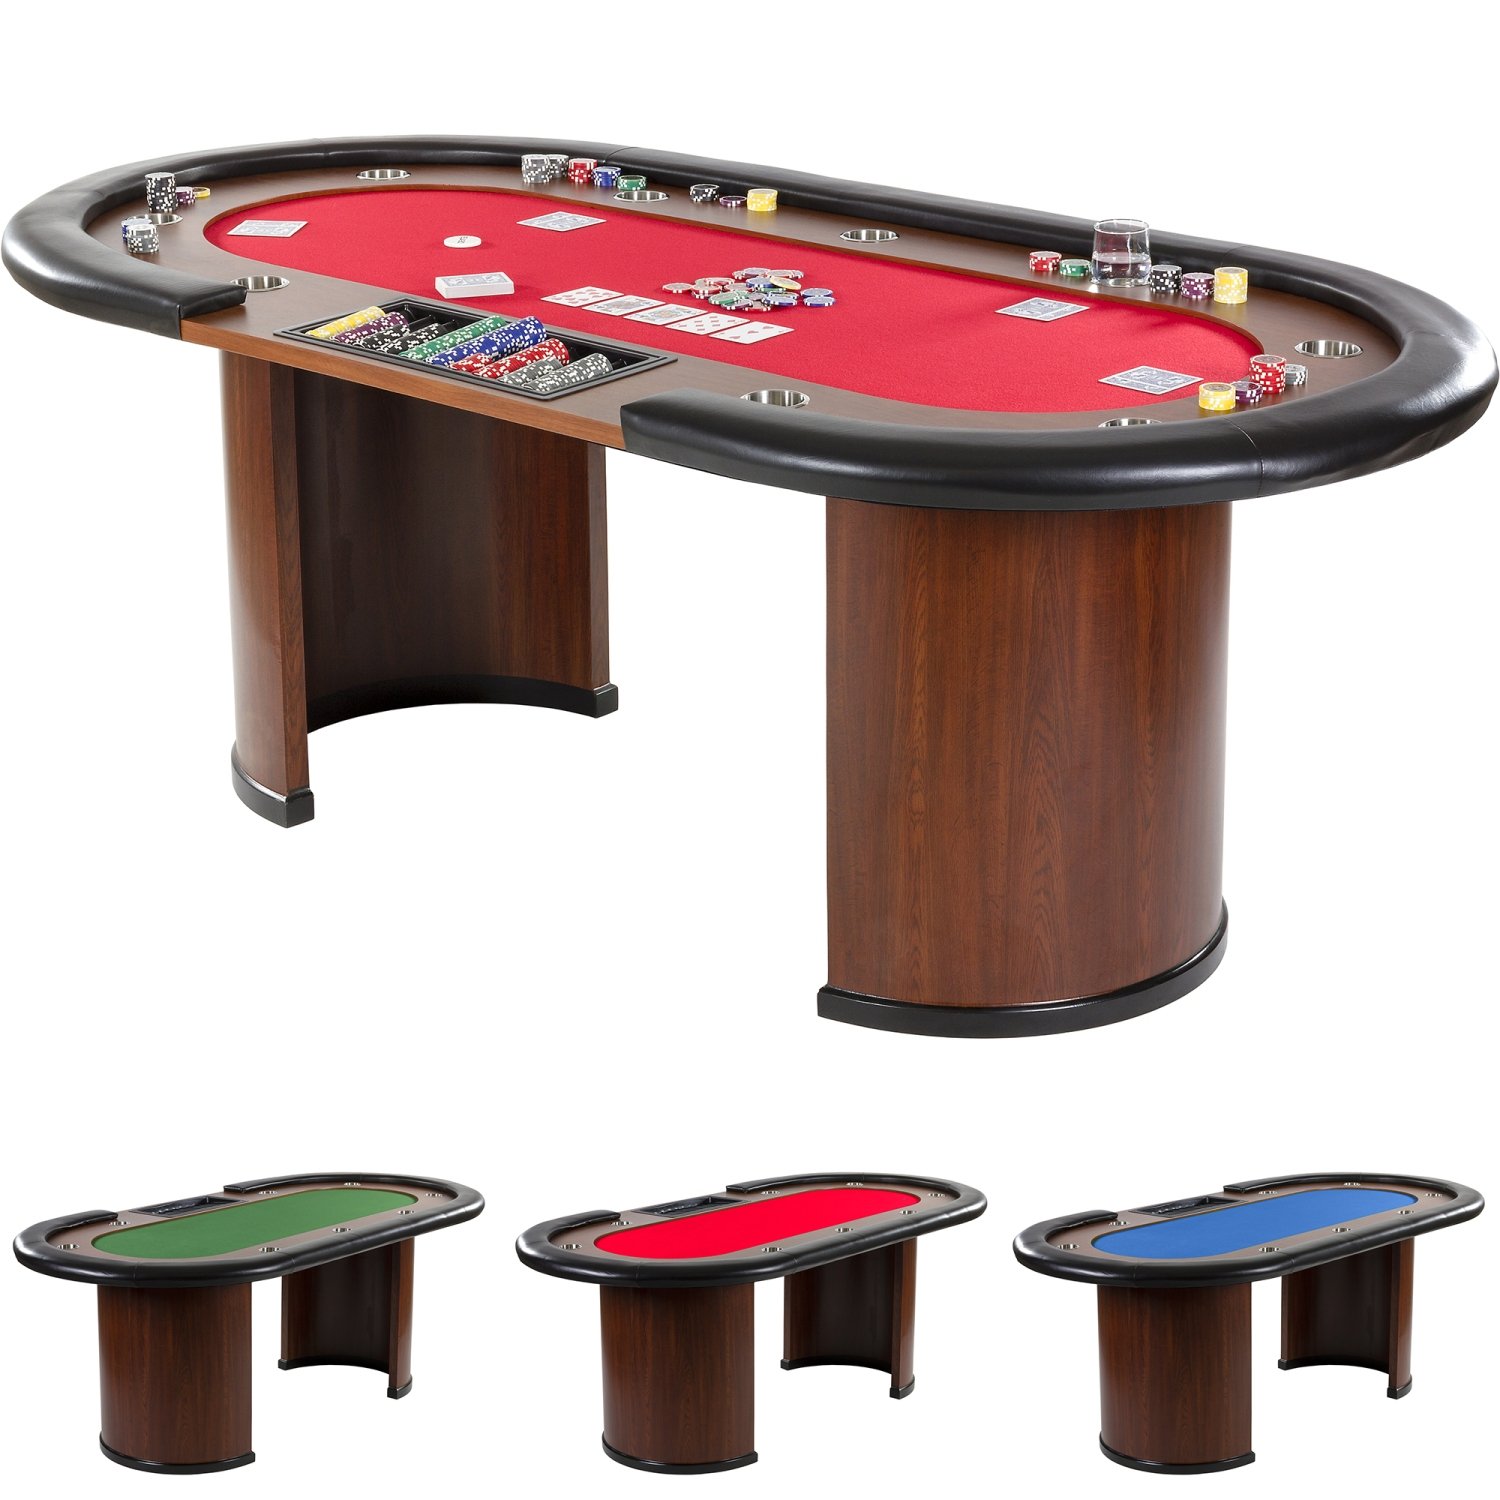 GAMES PLANET Pokertisch „Royal Flush“, 213 x 106 x75 cm, Farbwahl, Gewicht 58kg, 9 Getränkehalter, gepolsterte Armauflage, rot